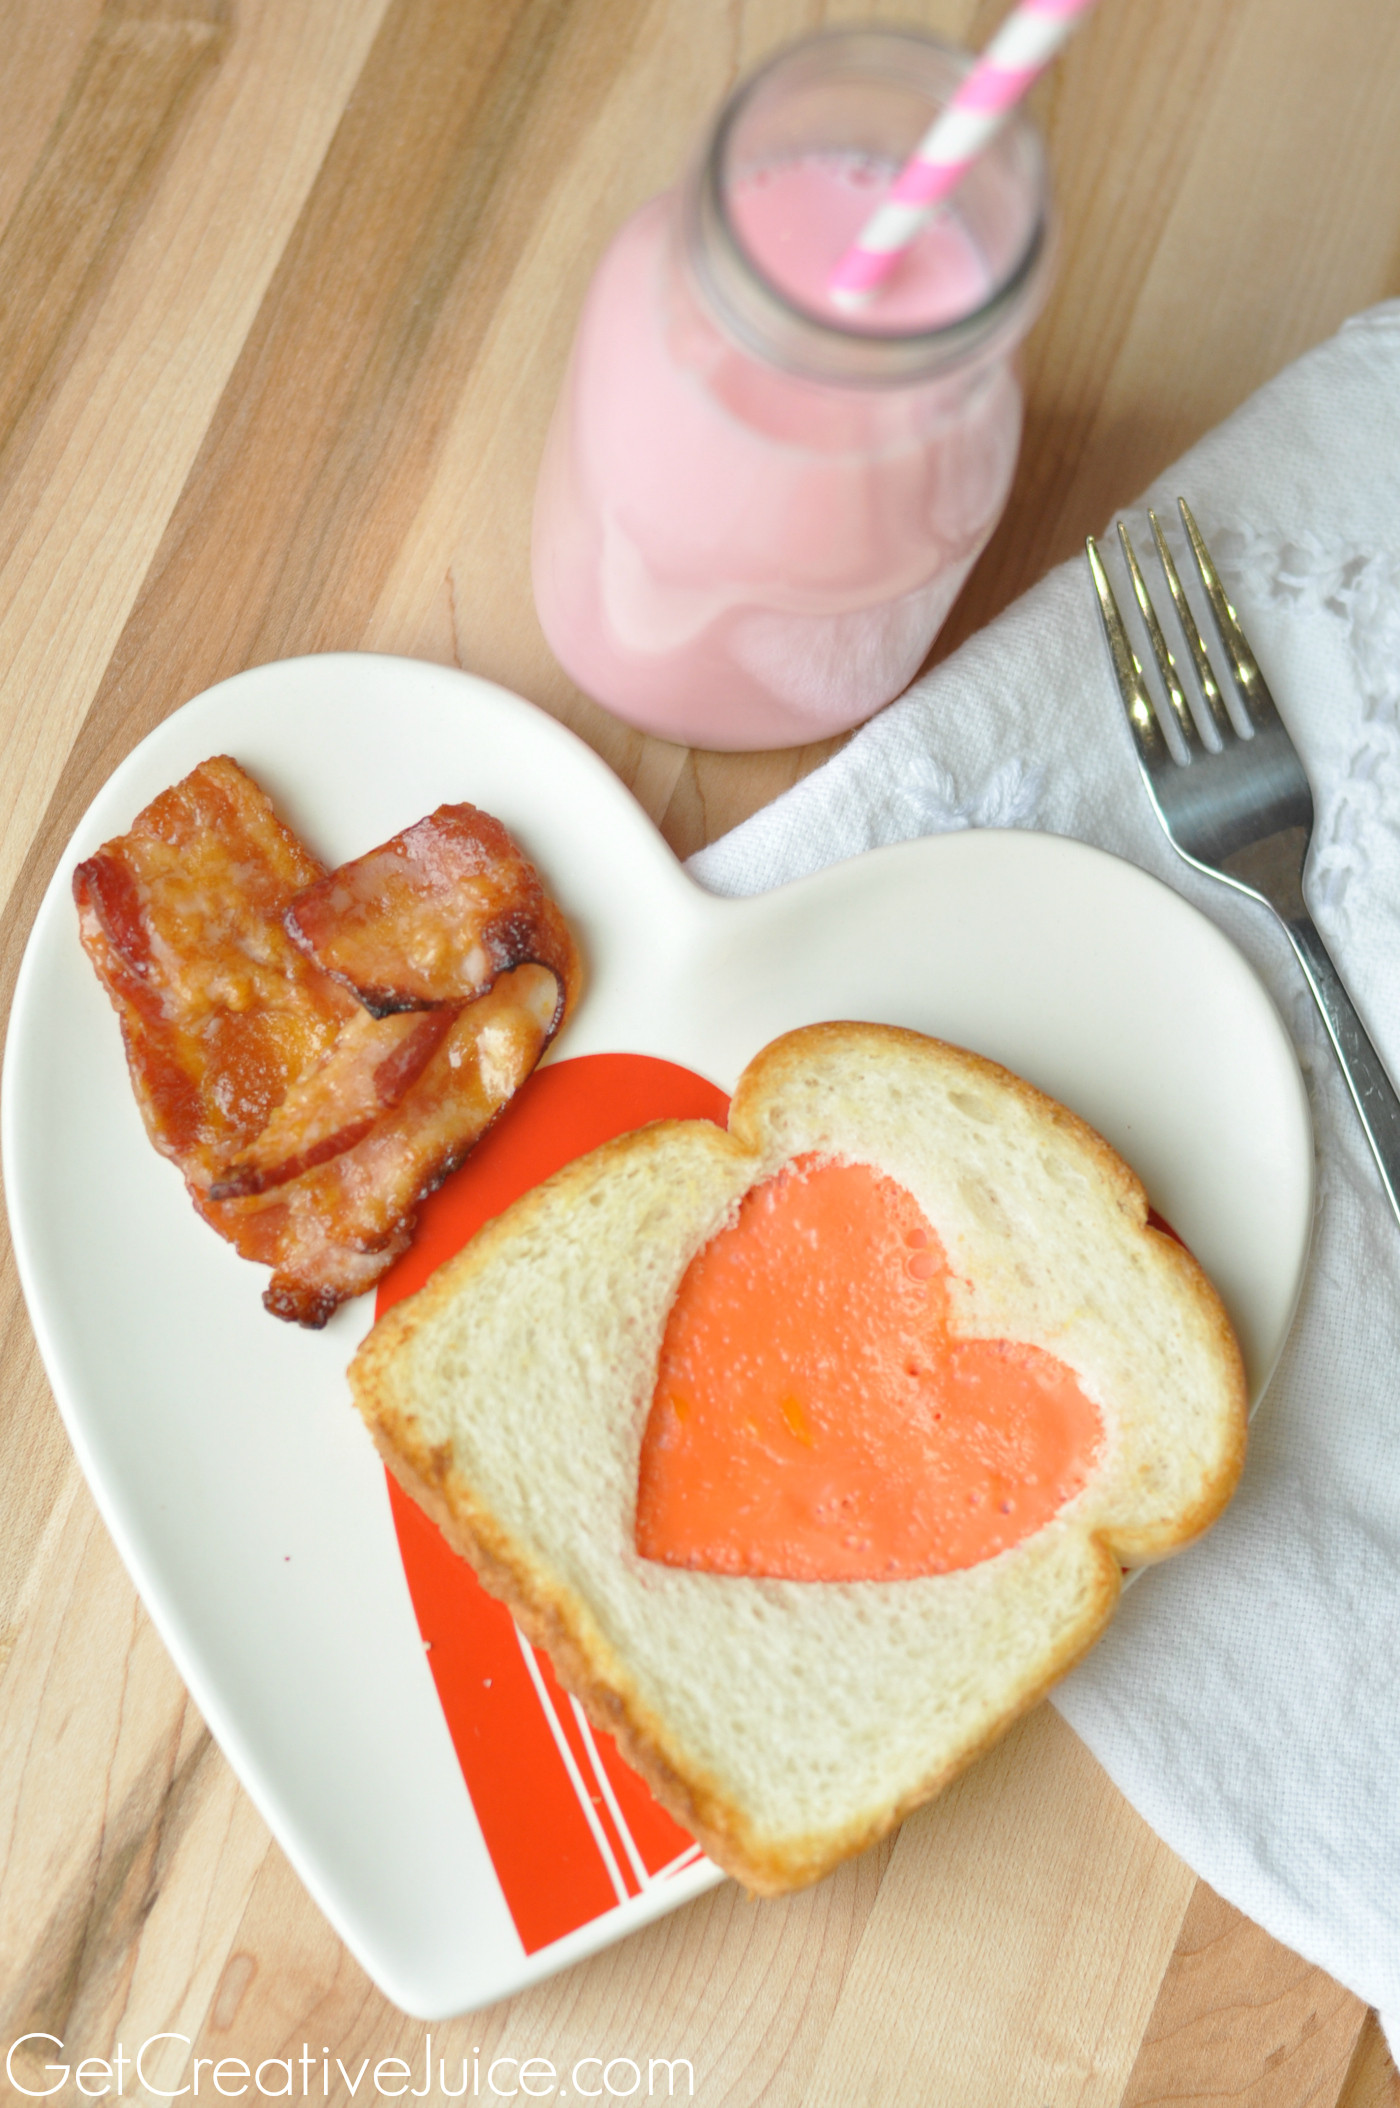 Valentine Breakfast For Kids
 Valentine s Day Breakfast Ideas Creative Juice